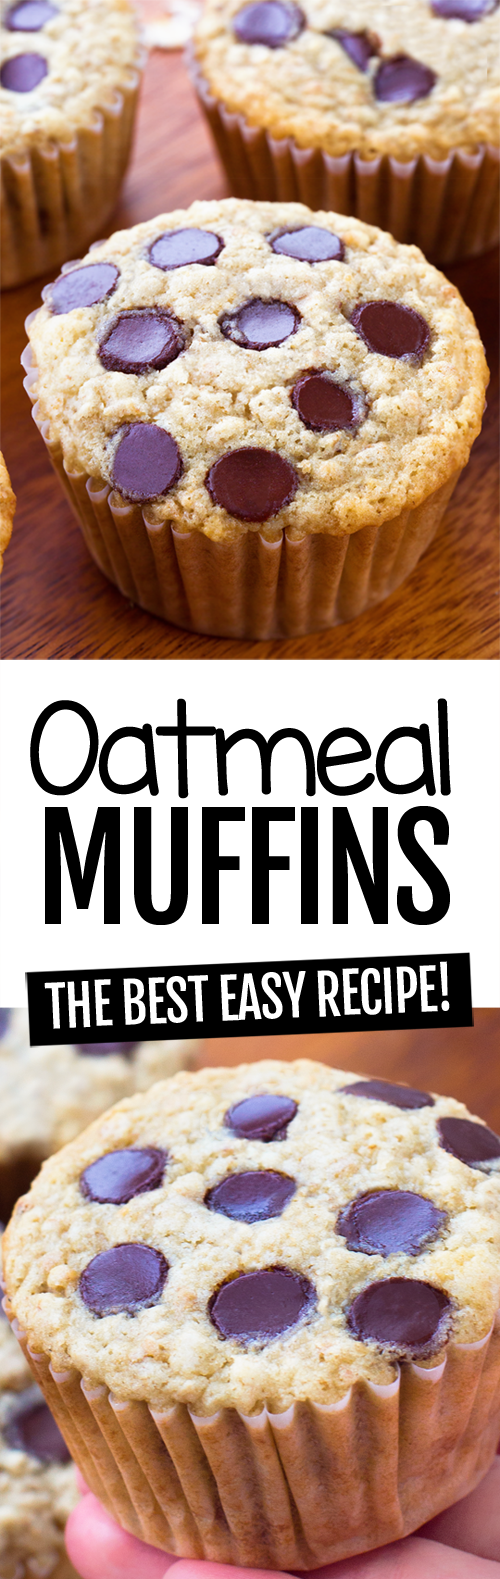 The Best Oatmeal Muffins Recipe